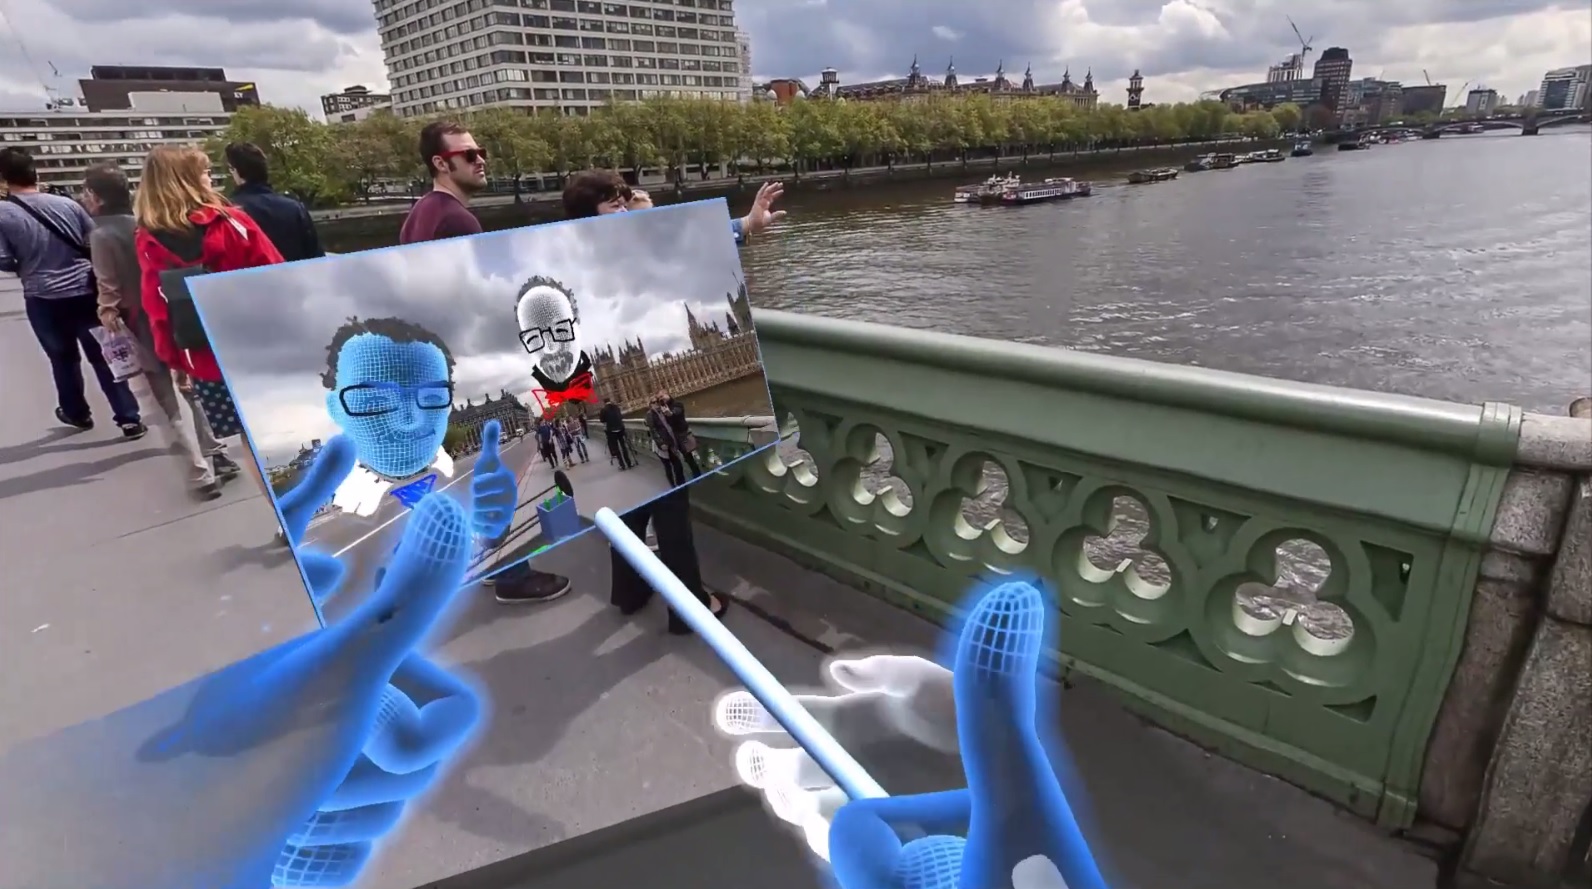 Wirtualny kijaszek do selfie w VR... fot. ujęcie z prezentacji video.